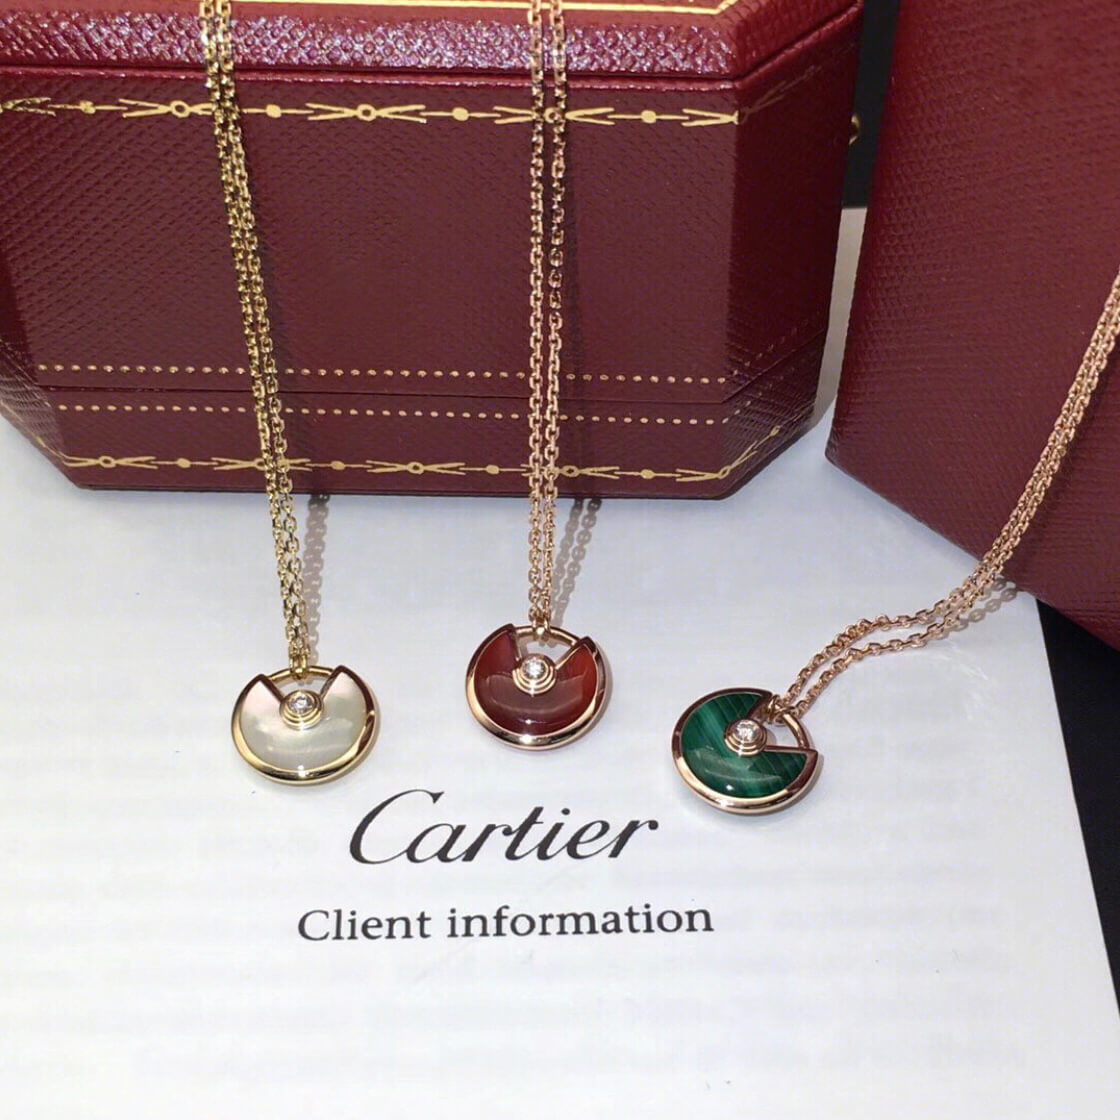 Replica Amulette De Cartier Necklace in Small Model